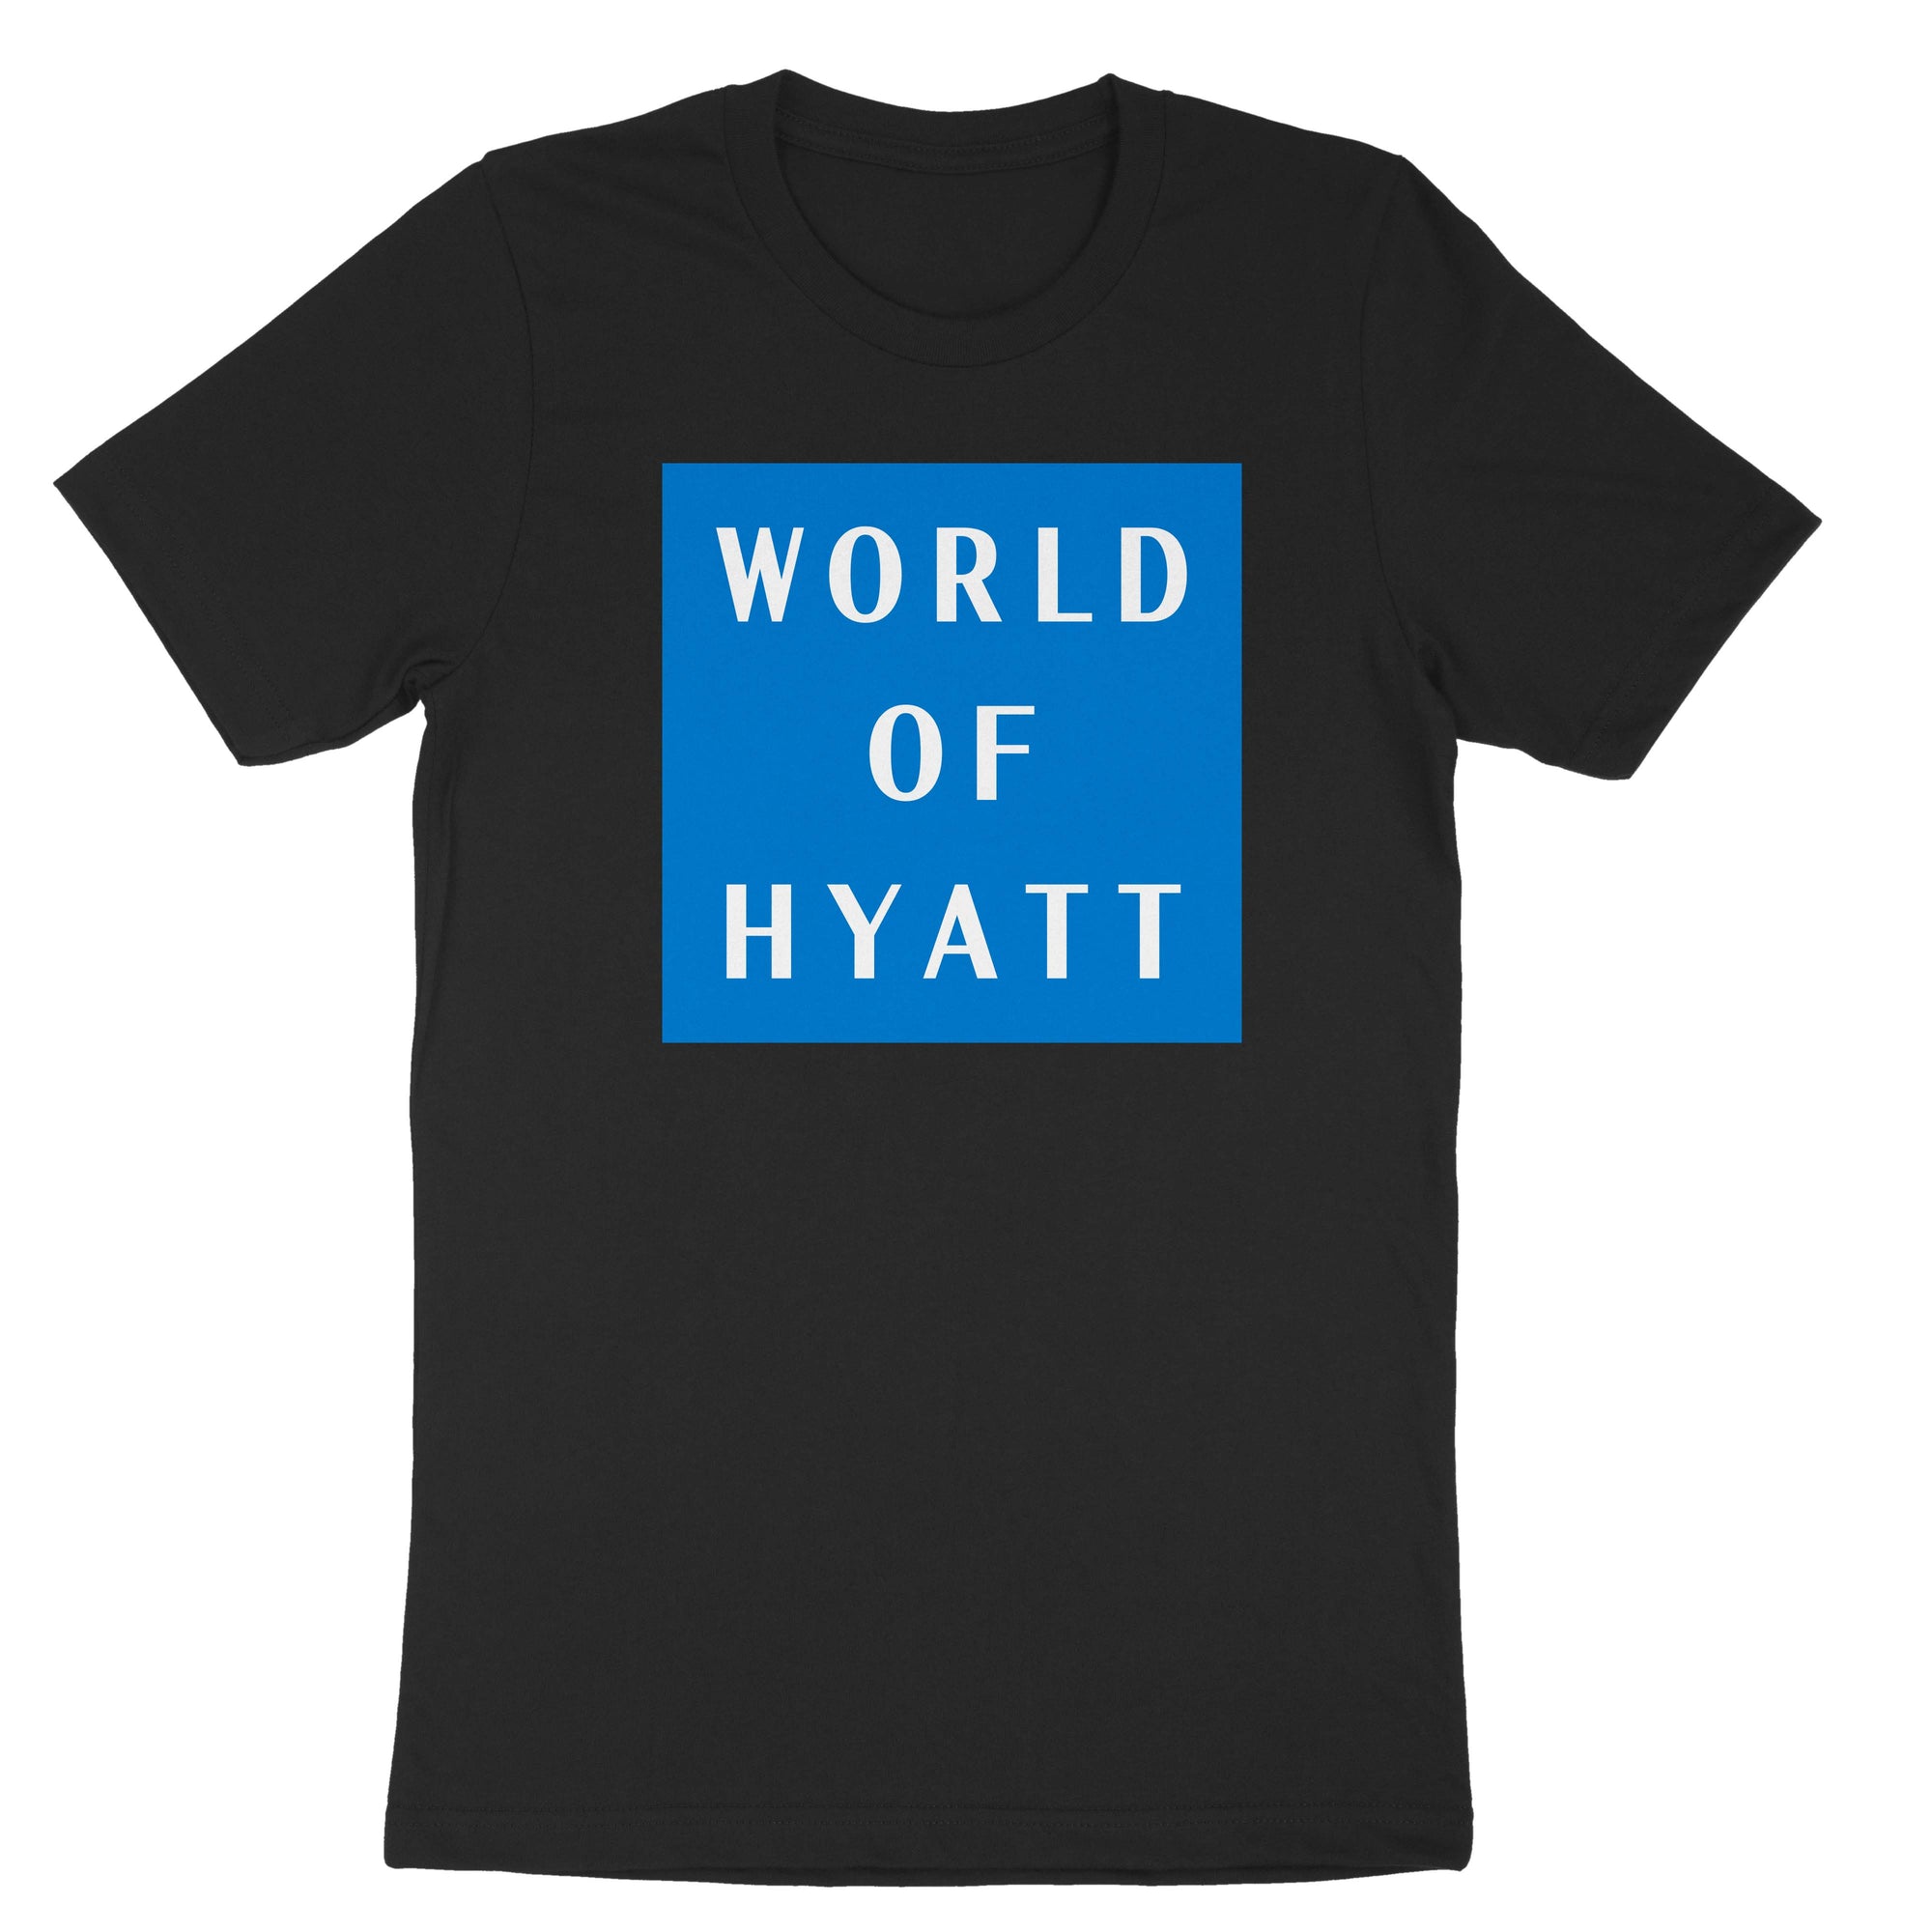 World of Hyatt Volunteer T-Shirt (Park Hyatt)